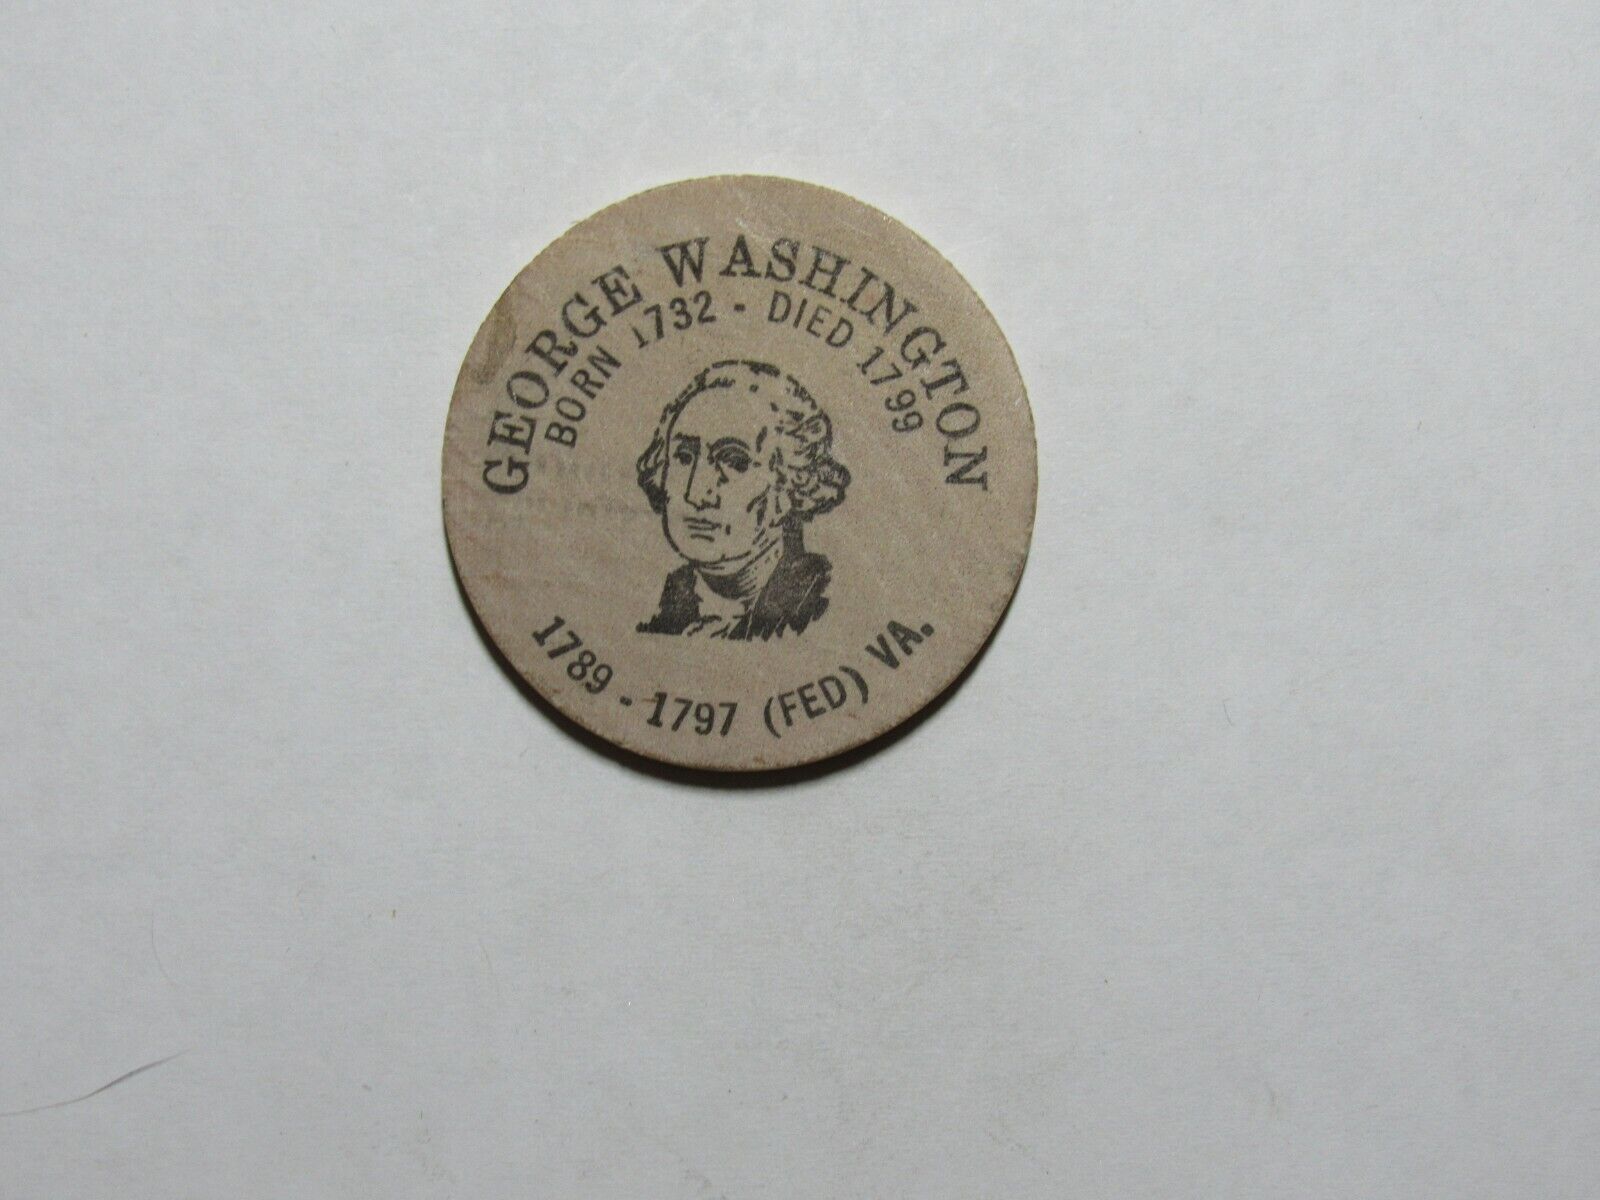 Old Wooden Nickel - George Washington 1732-1799